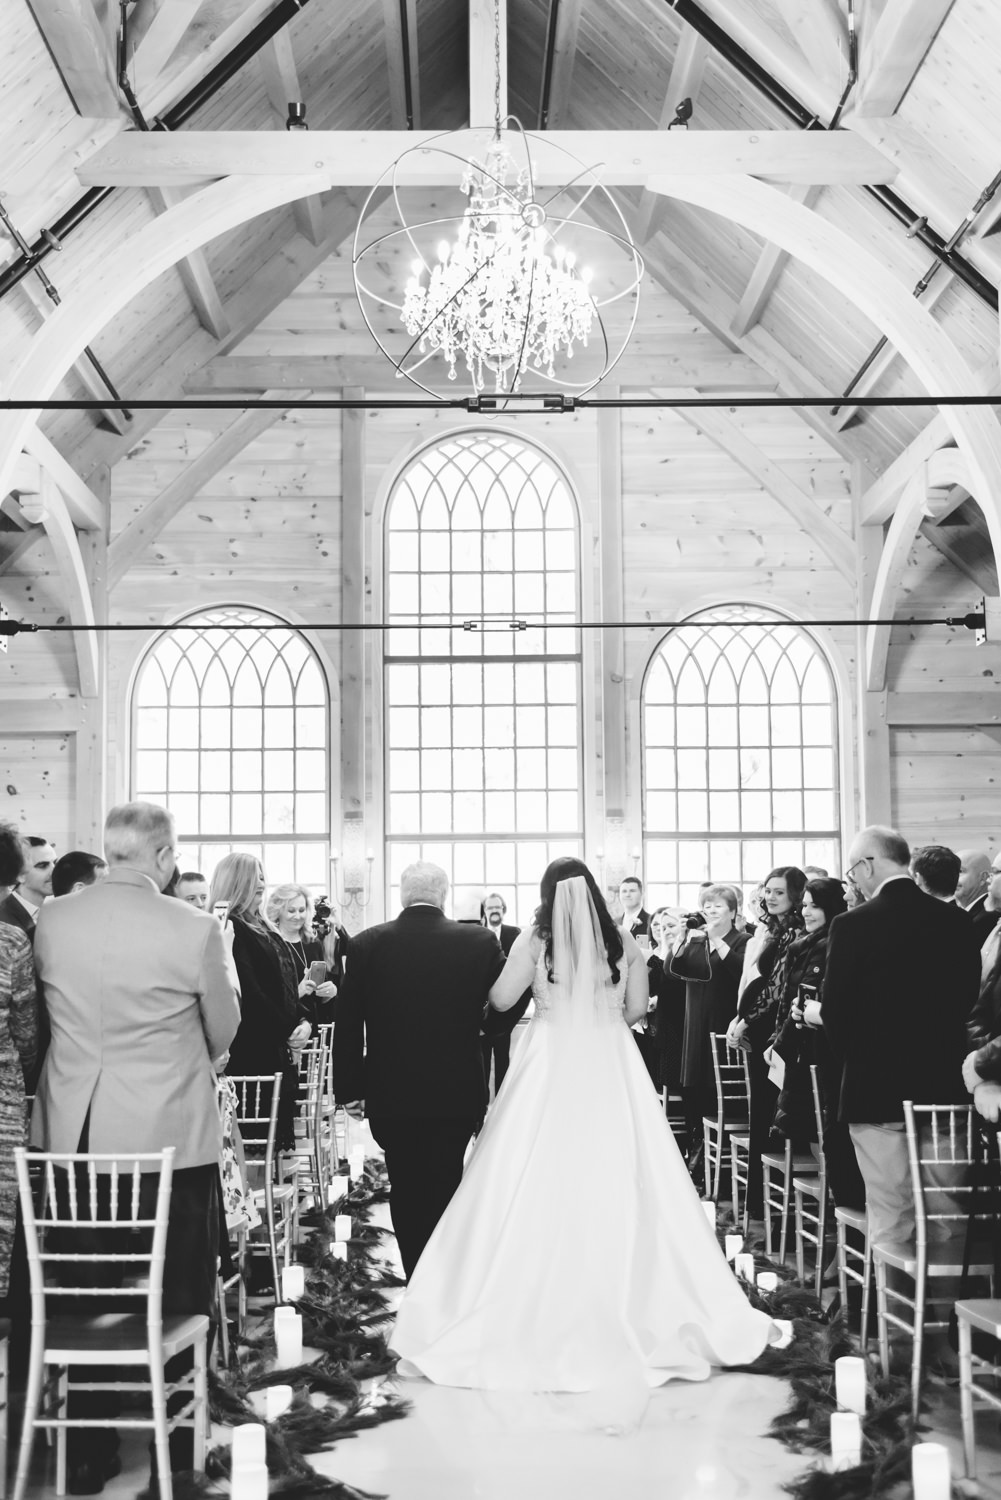 Five Unique St. Louis Wedding Venues | Erica Robnett Photography